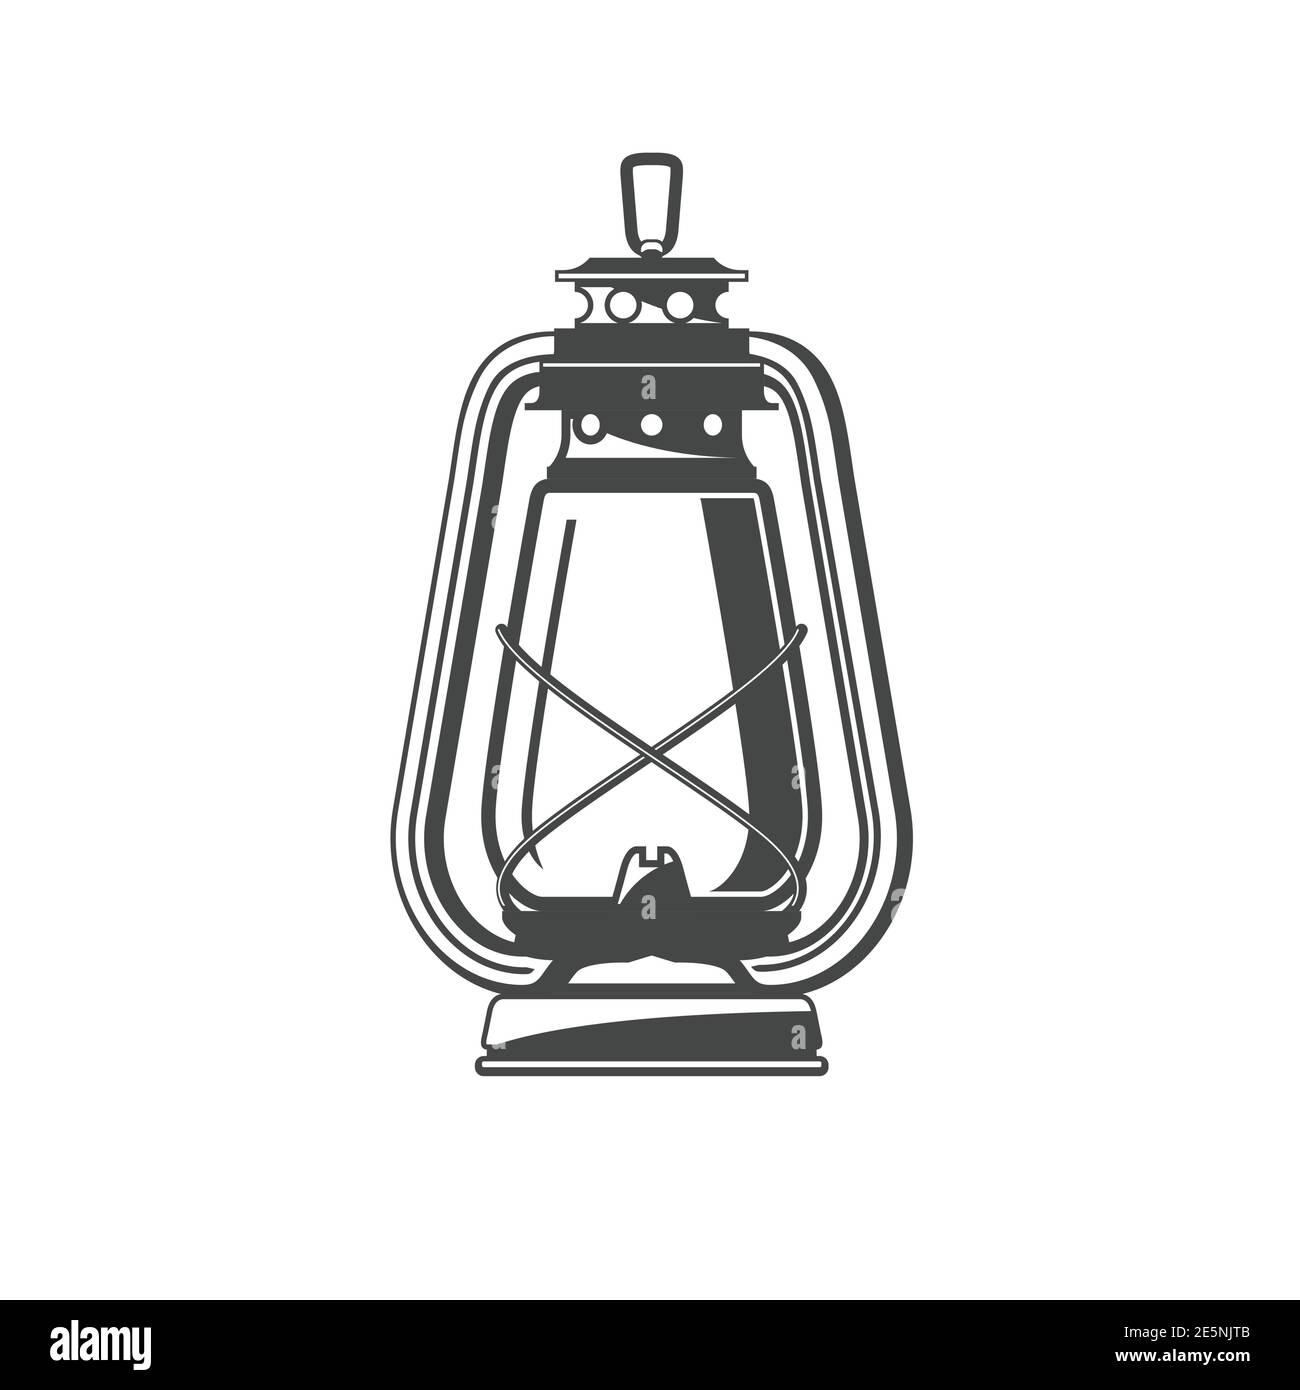 Old oil lamp, kerosene camping lantern silhouette, oil lamp icon, vector  Stock Vector Image & Art - Alamy